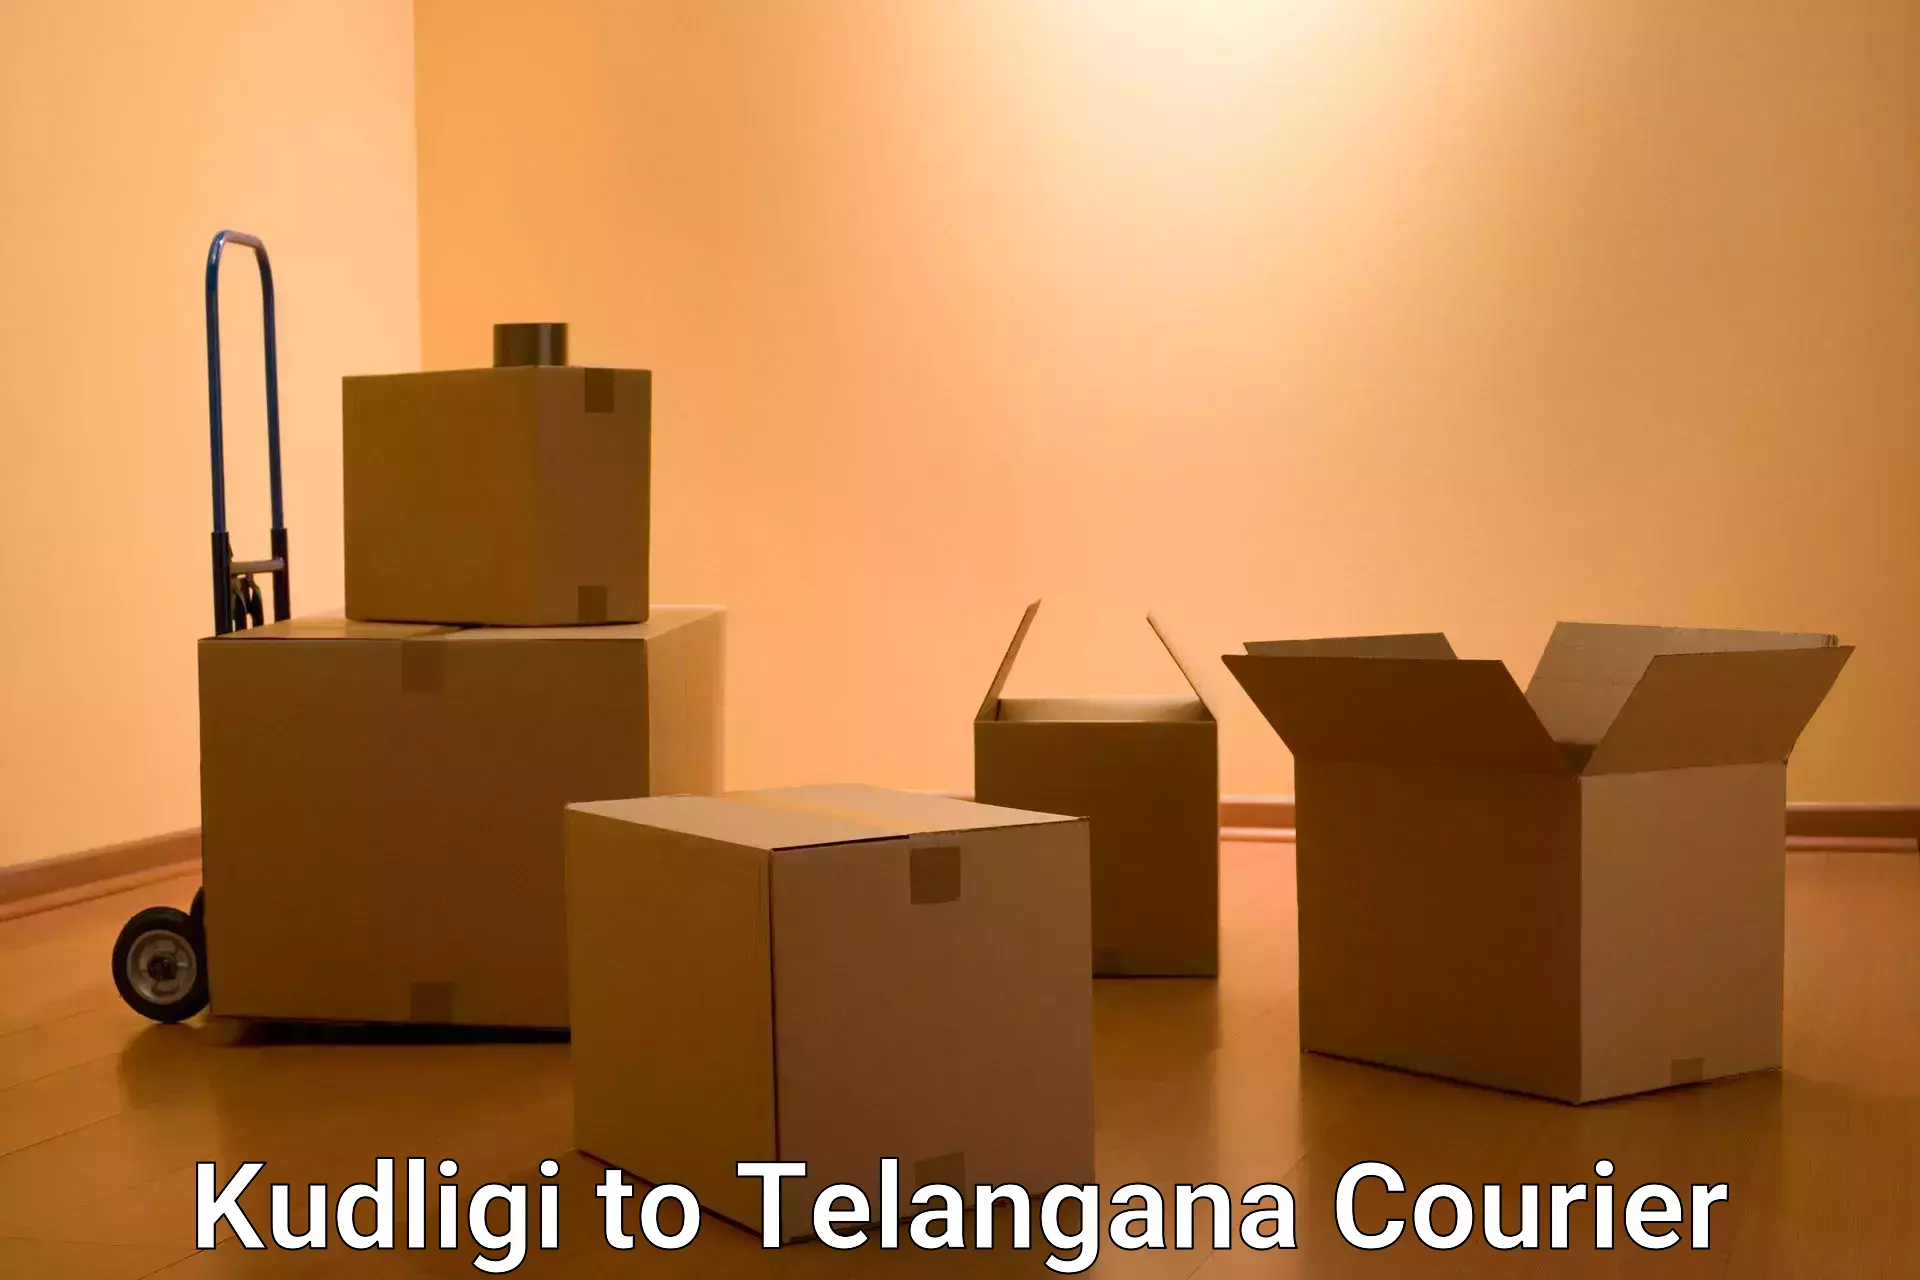 Express delivery capabilities Kudligi to Telangana